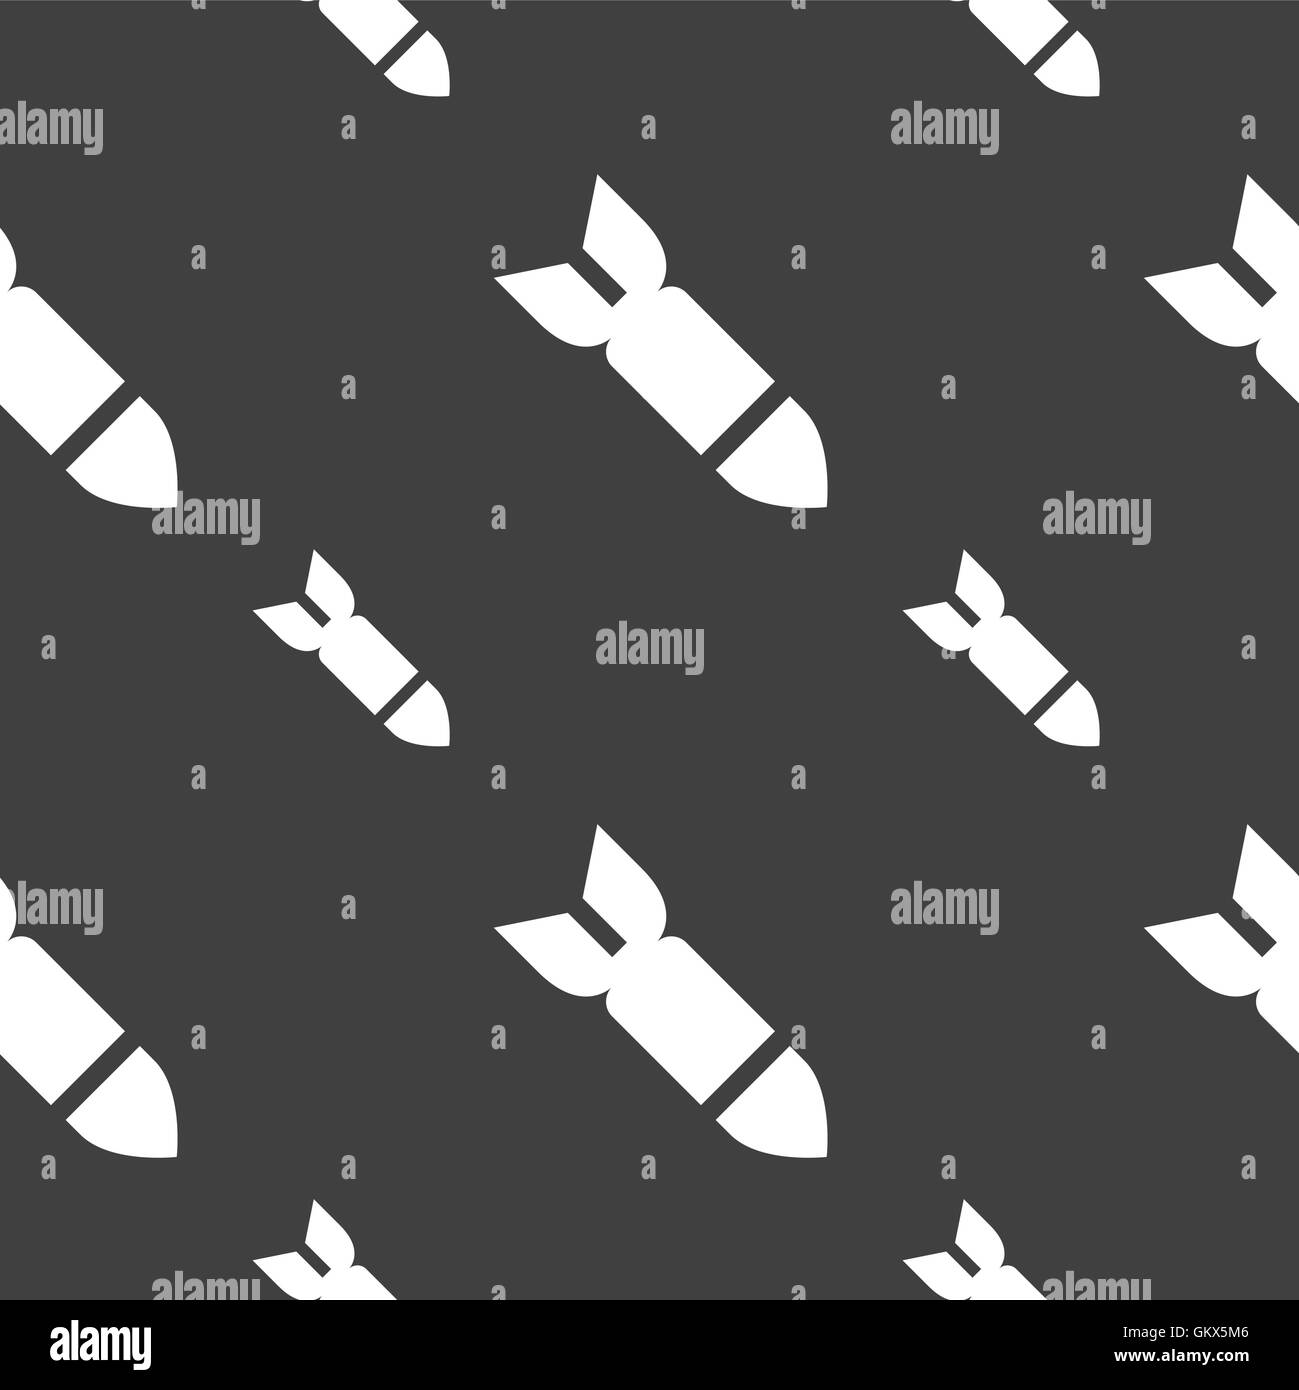 Rakete, Rakete Waffe Symbol Zeichen. Nahtlose Muster auf einem grauen Hintergrund. Vektor Stock Vektor